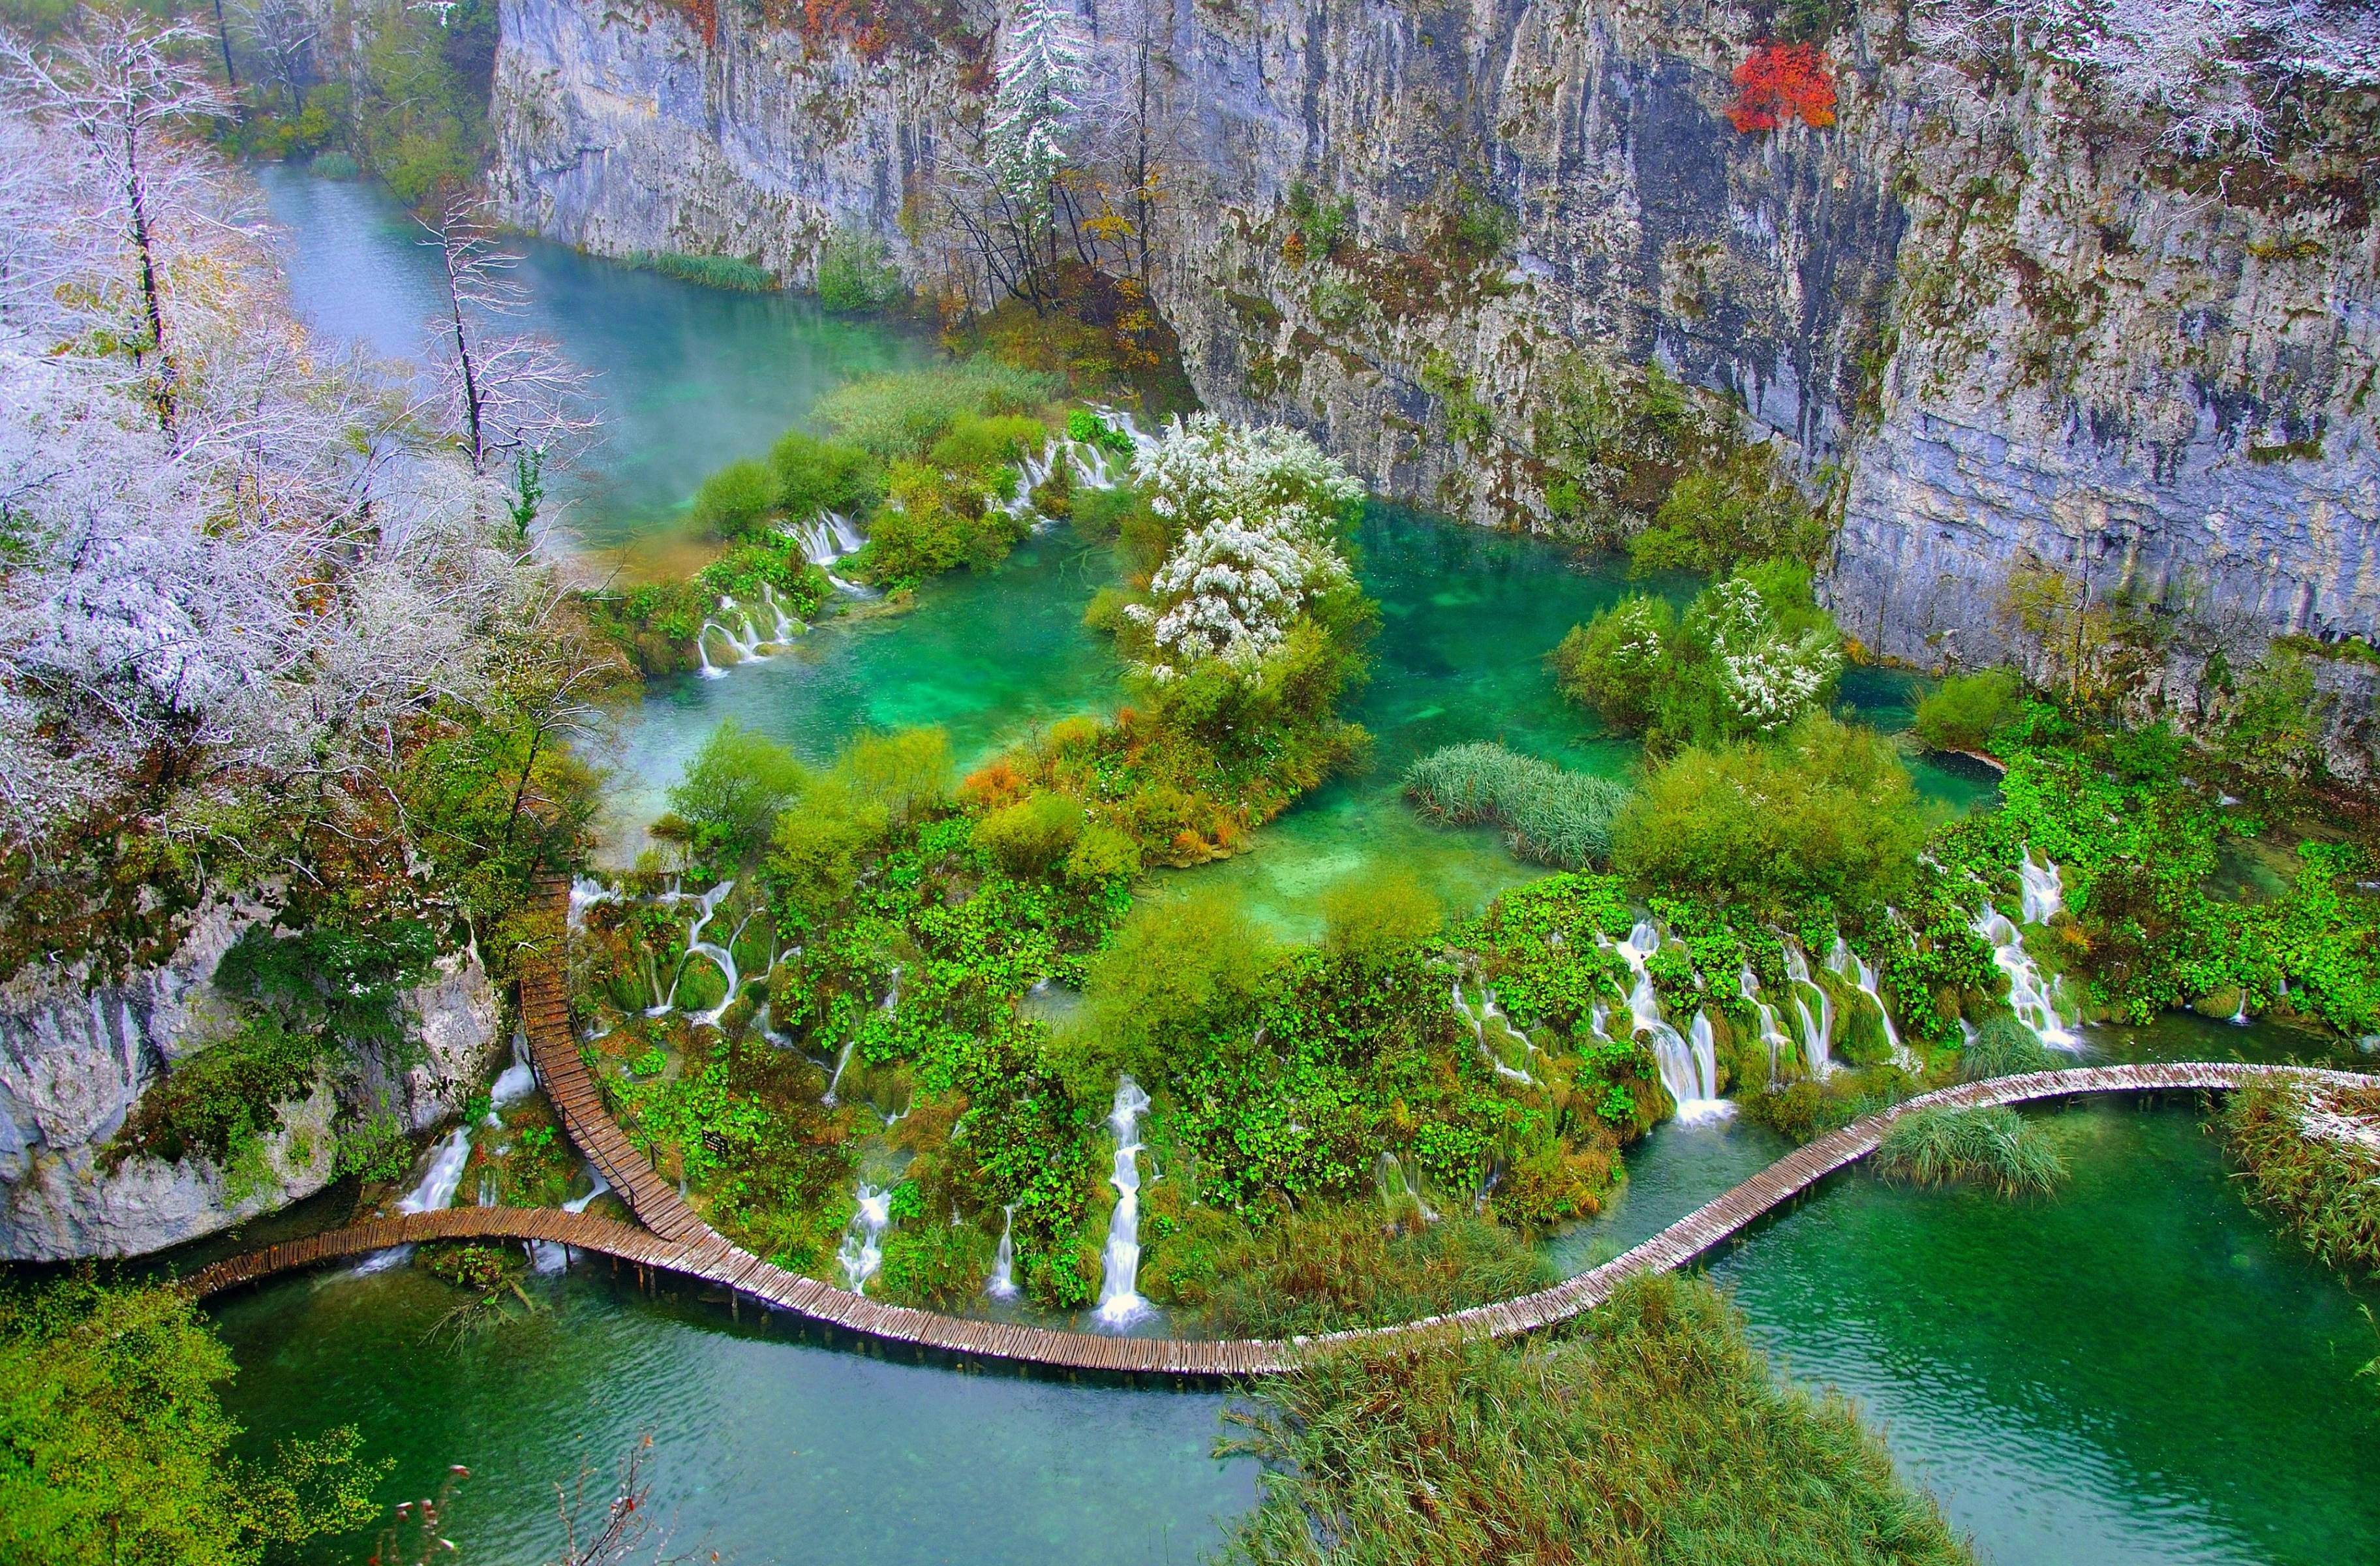 Parque Nacional de Plitvice, naturaleza en su máxima expresión